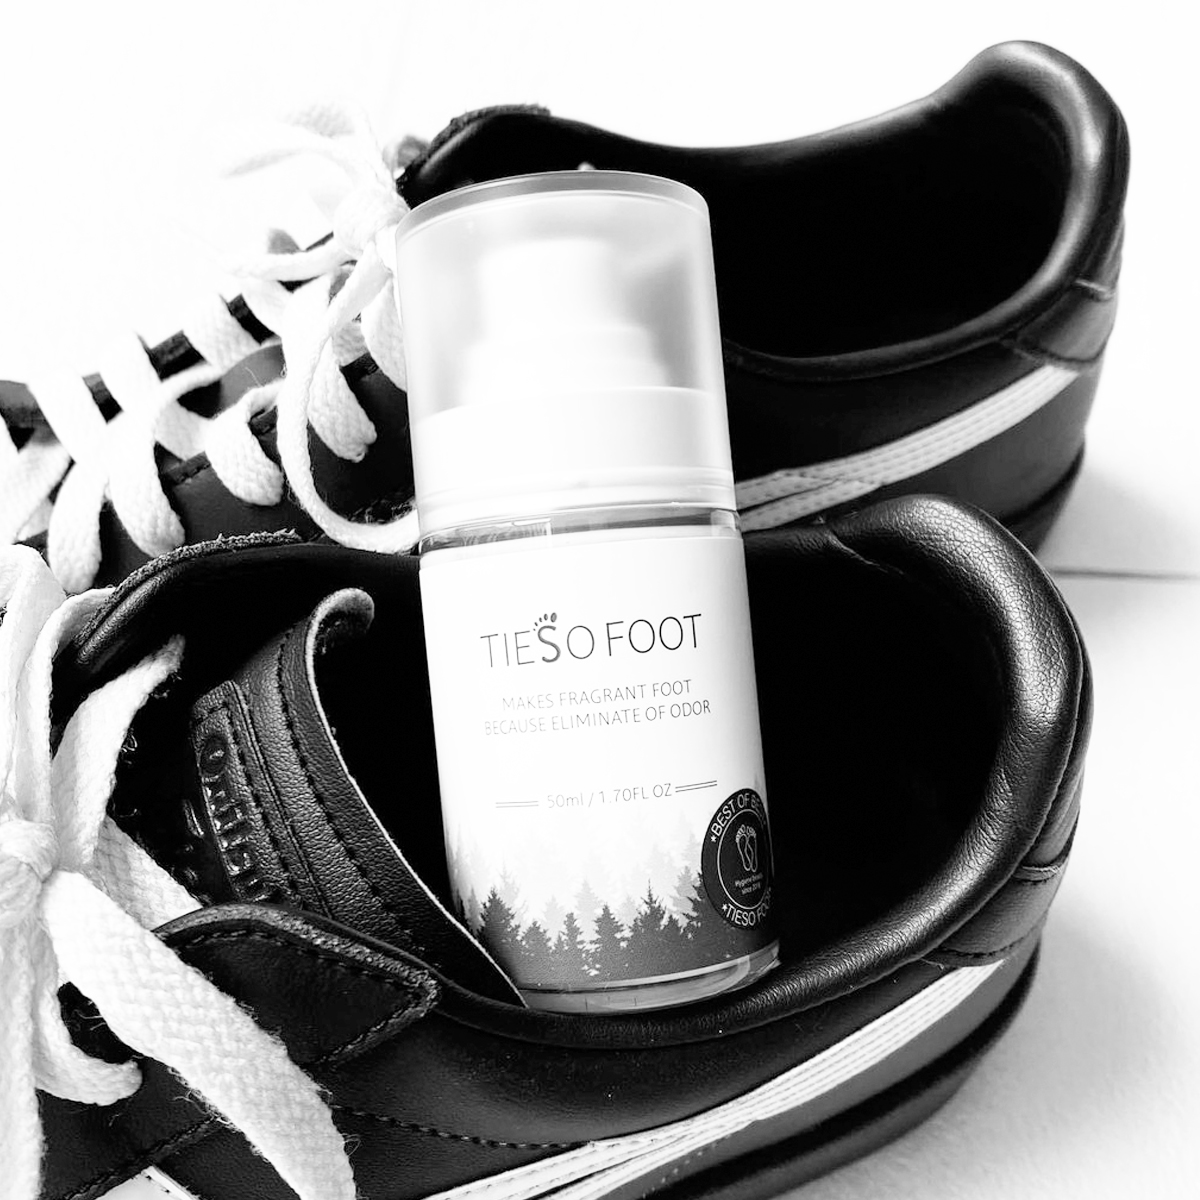 Xịt Khử Mùi Hôi Chân Cao Cấp Tieso Foot Spray Từ Hàn Quốc Dung Tích 50ml